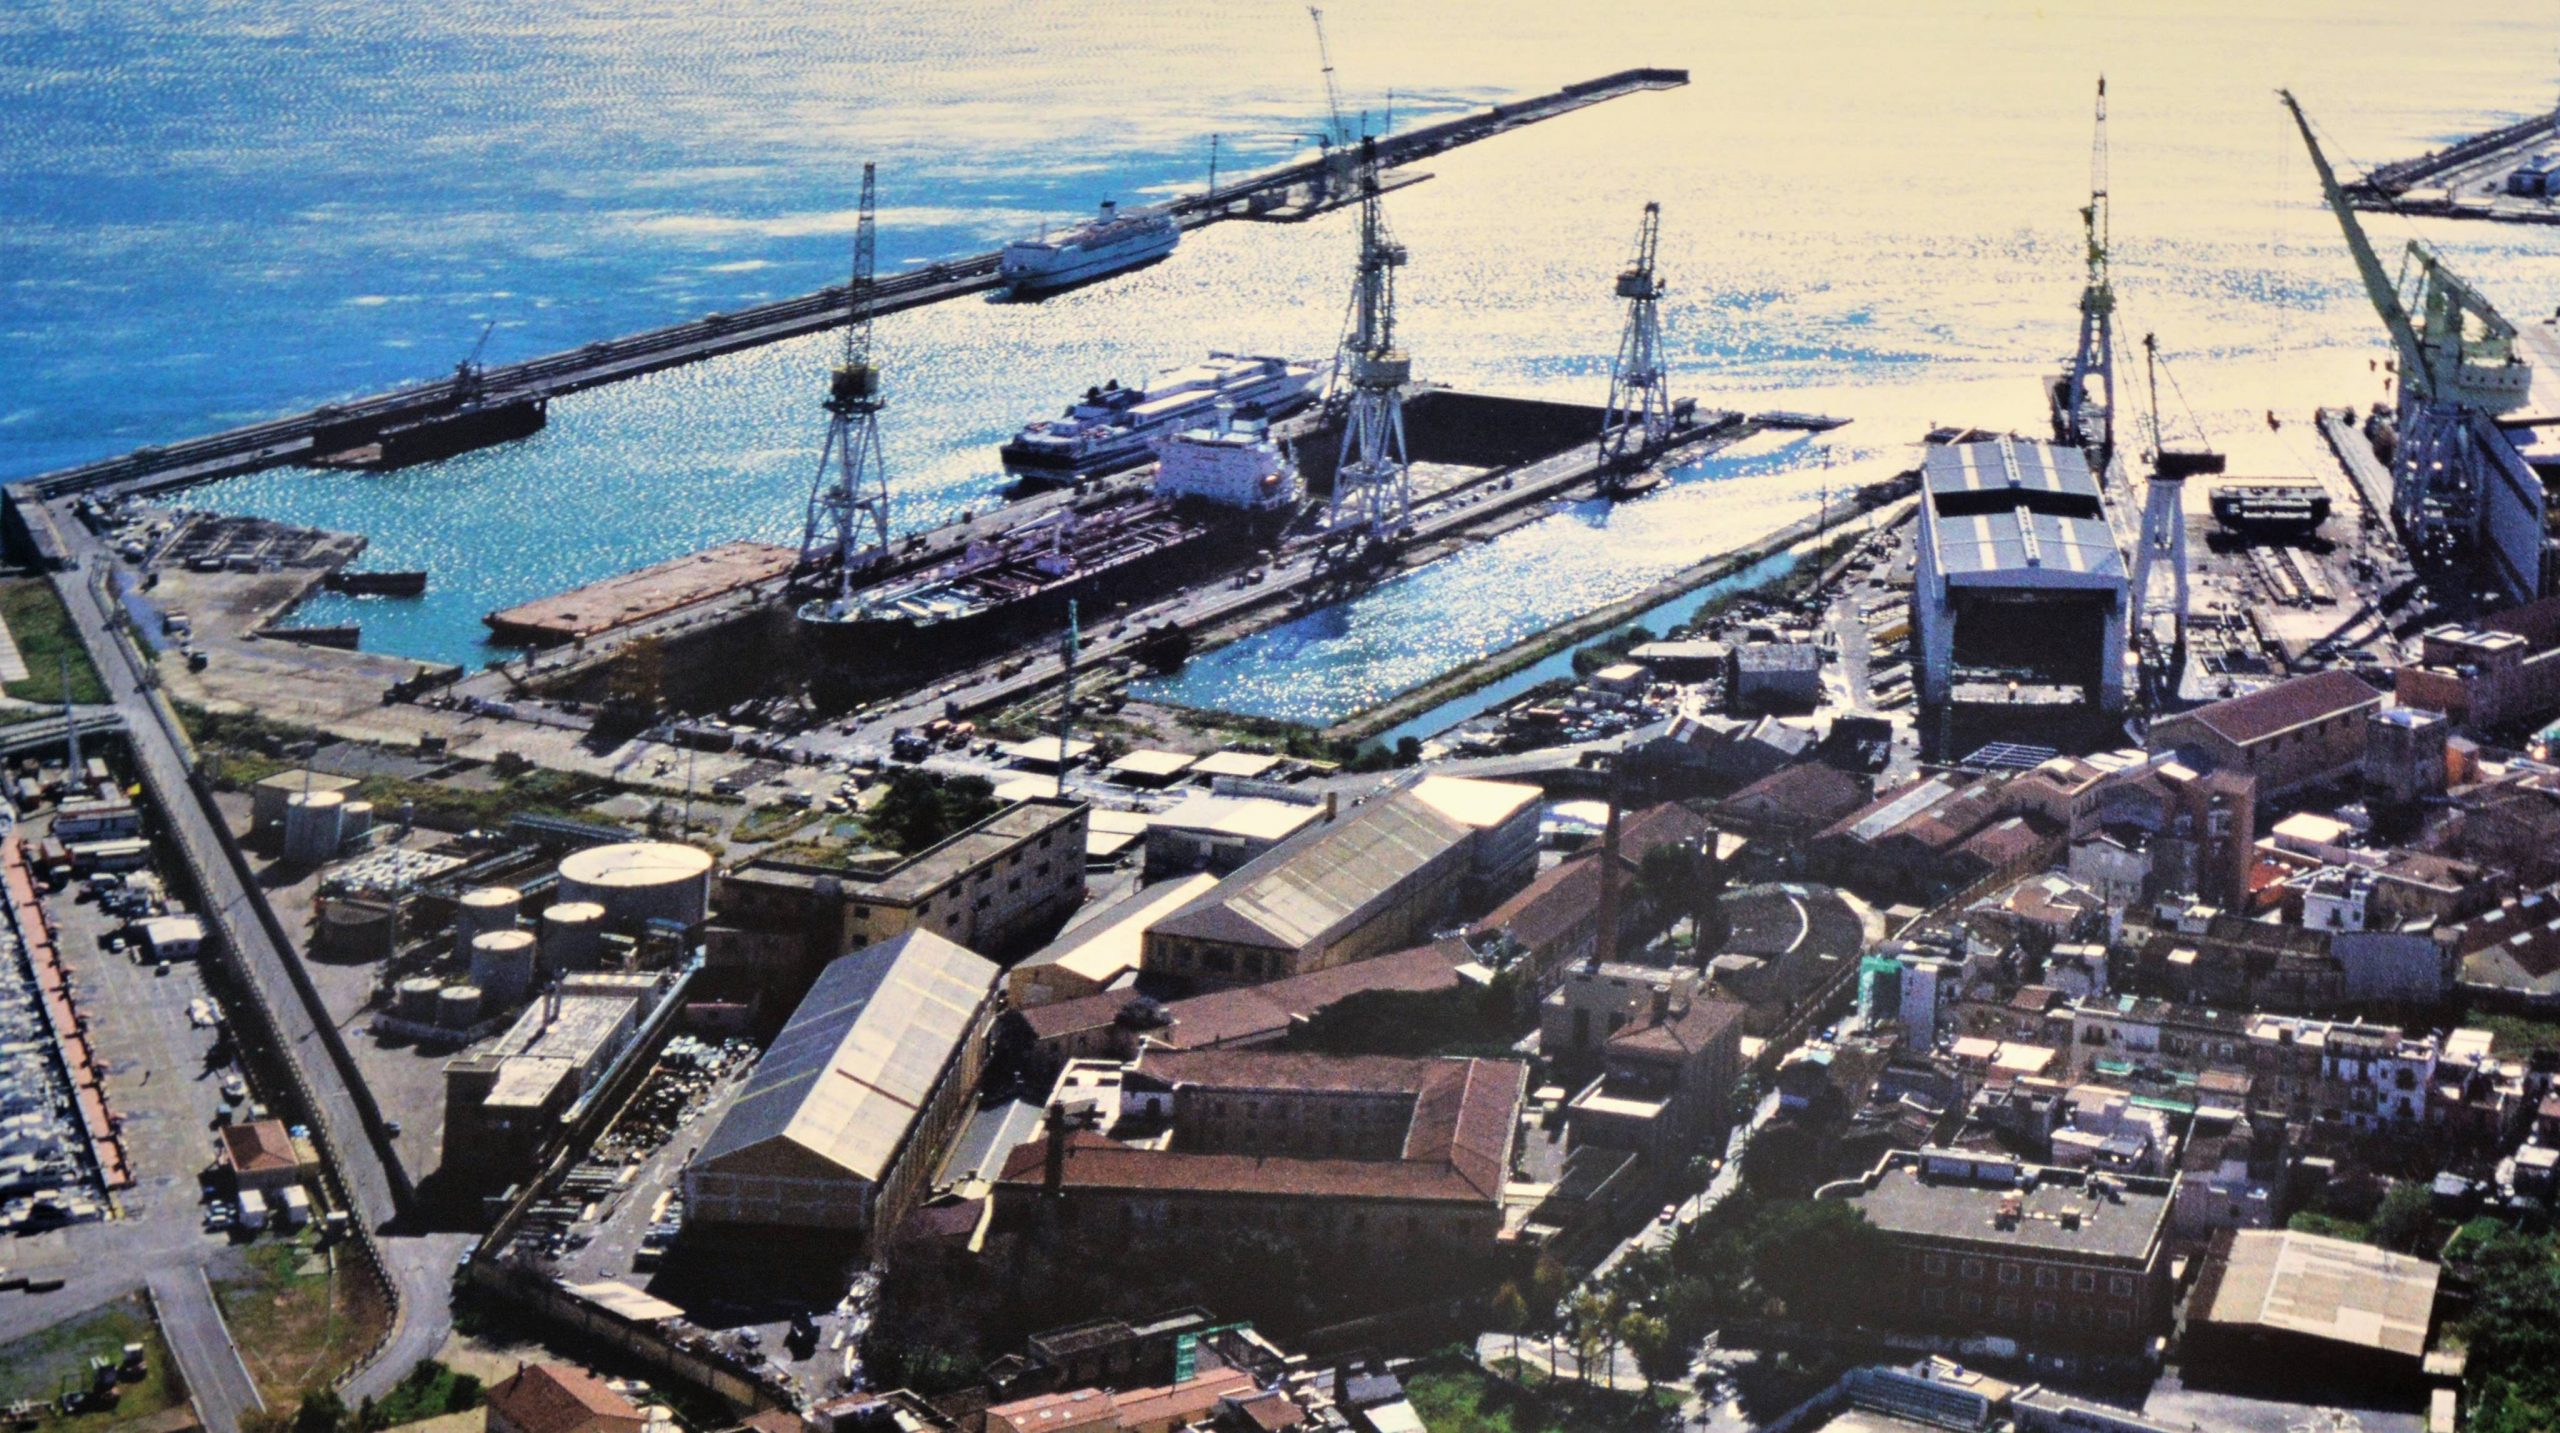 Autorità portuale Palermo, foto vecchia